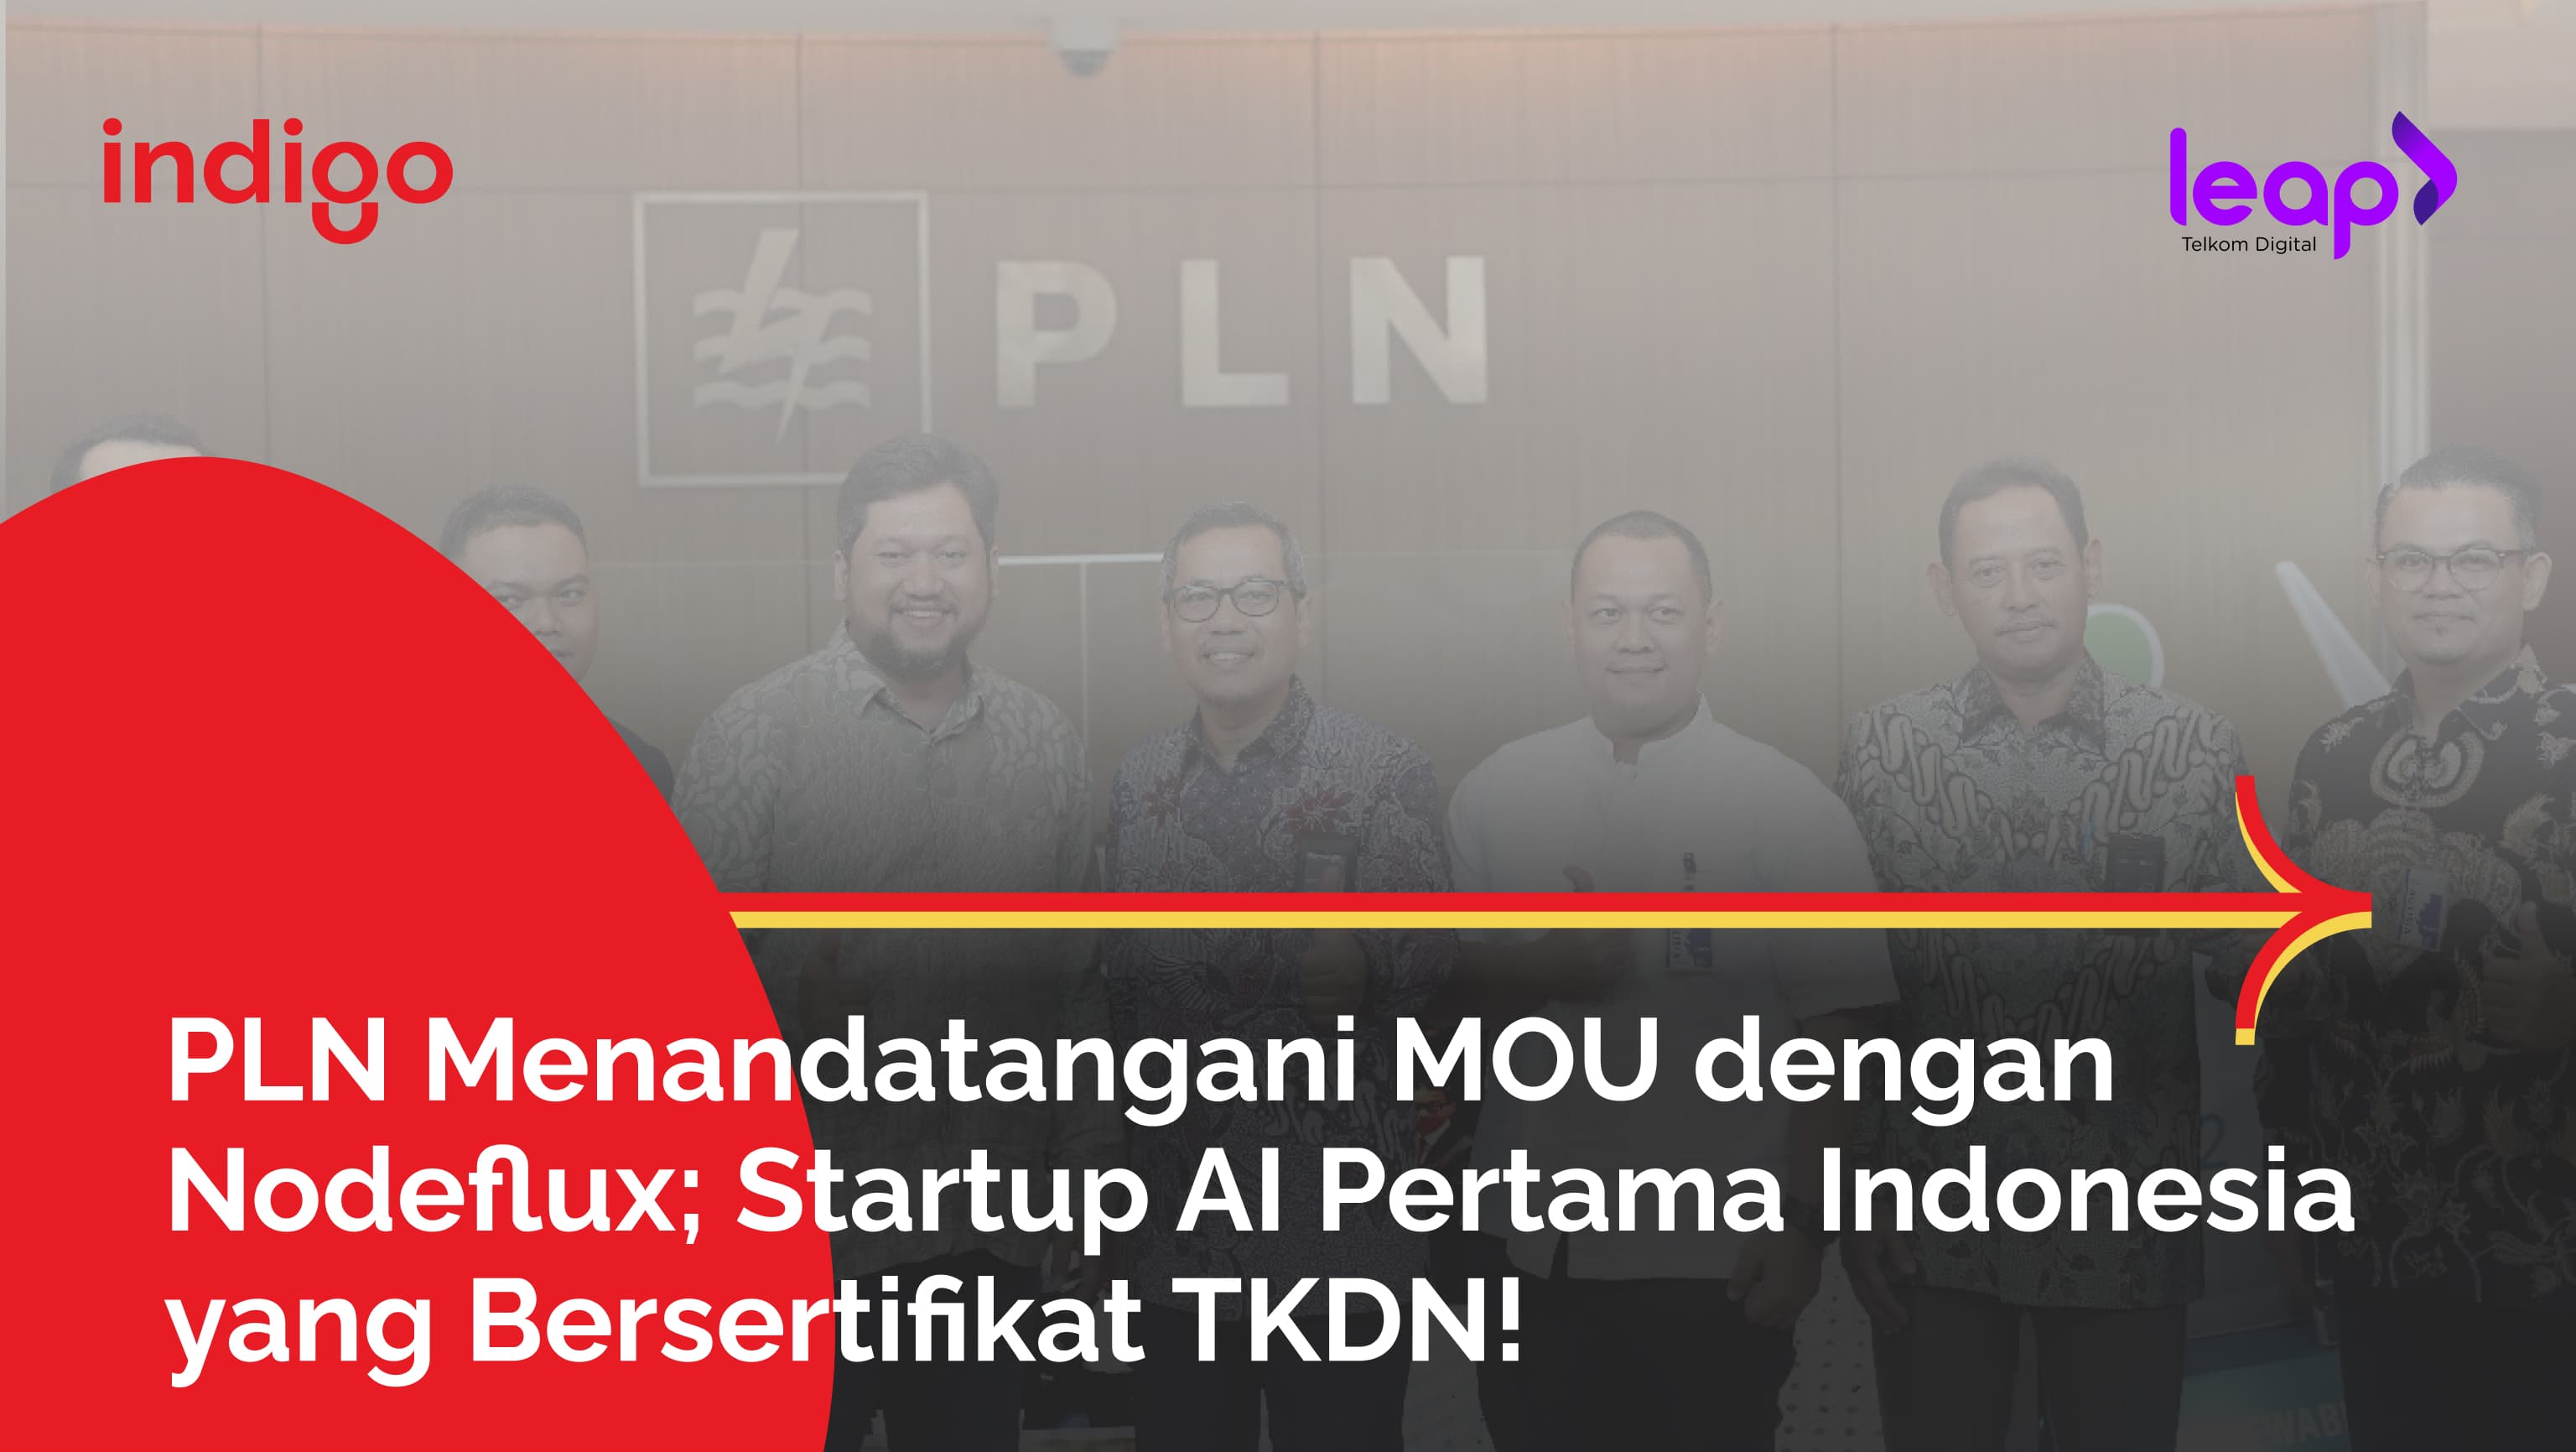 PLN Menandatangani MOU dengan Nodeflux; Startup AI Pertama Indonesia yang Bersertifikat TKDN!